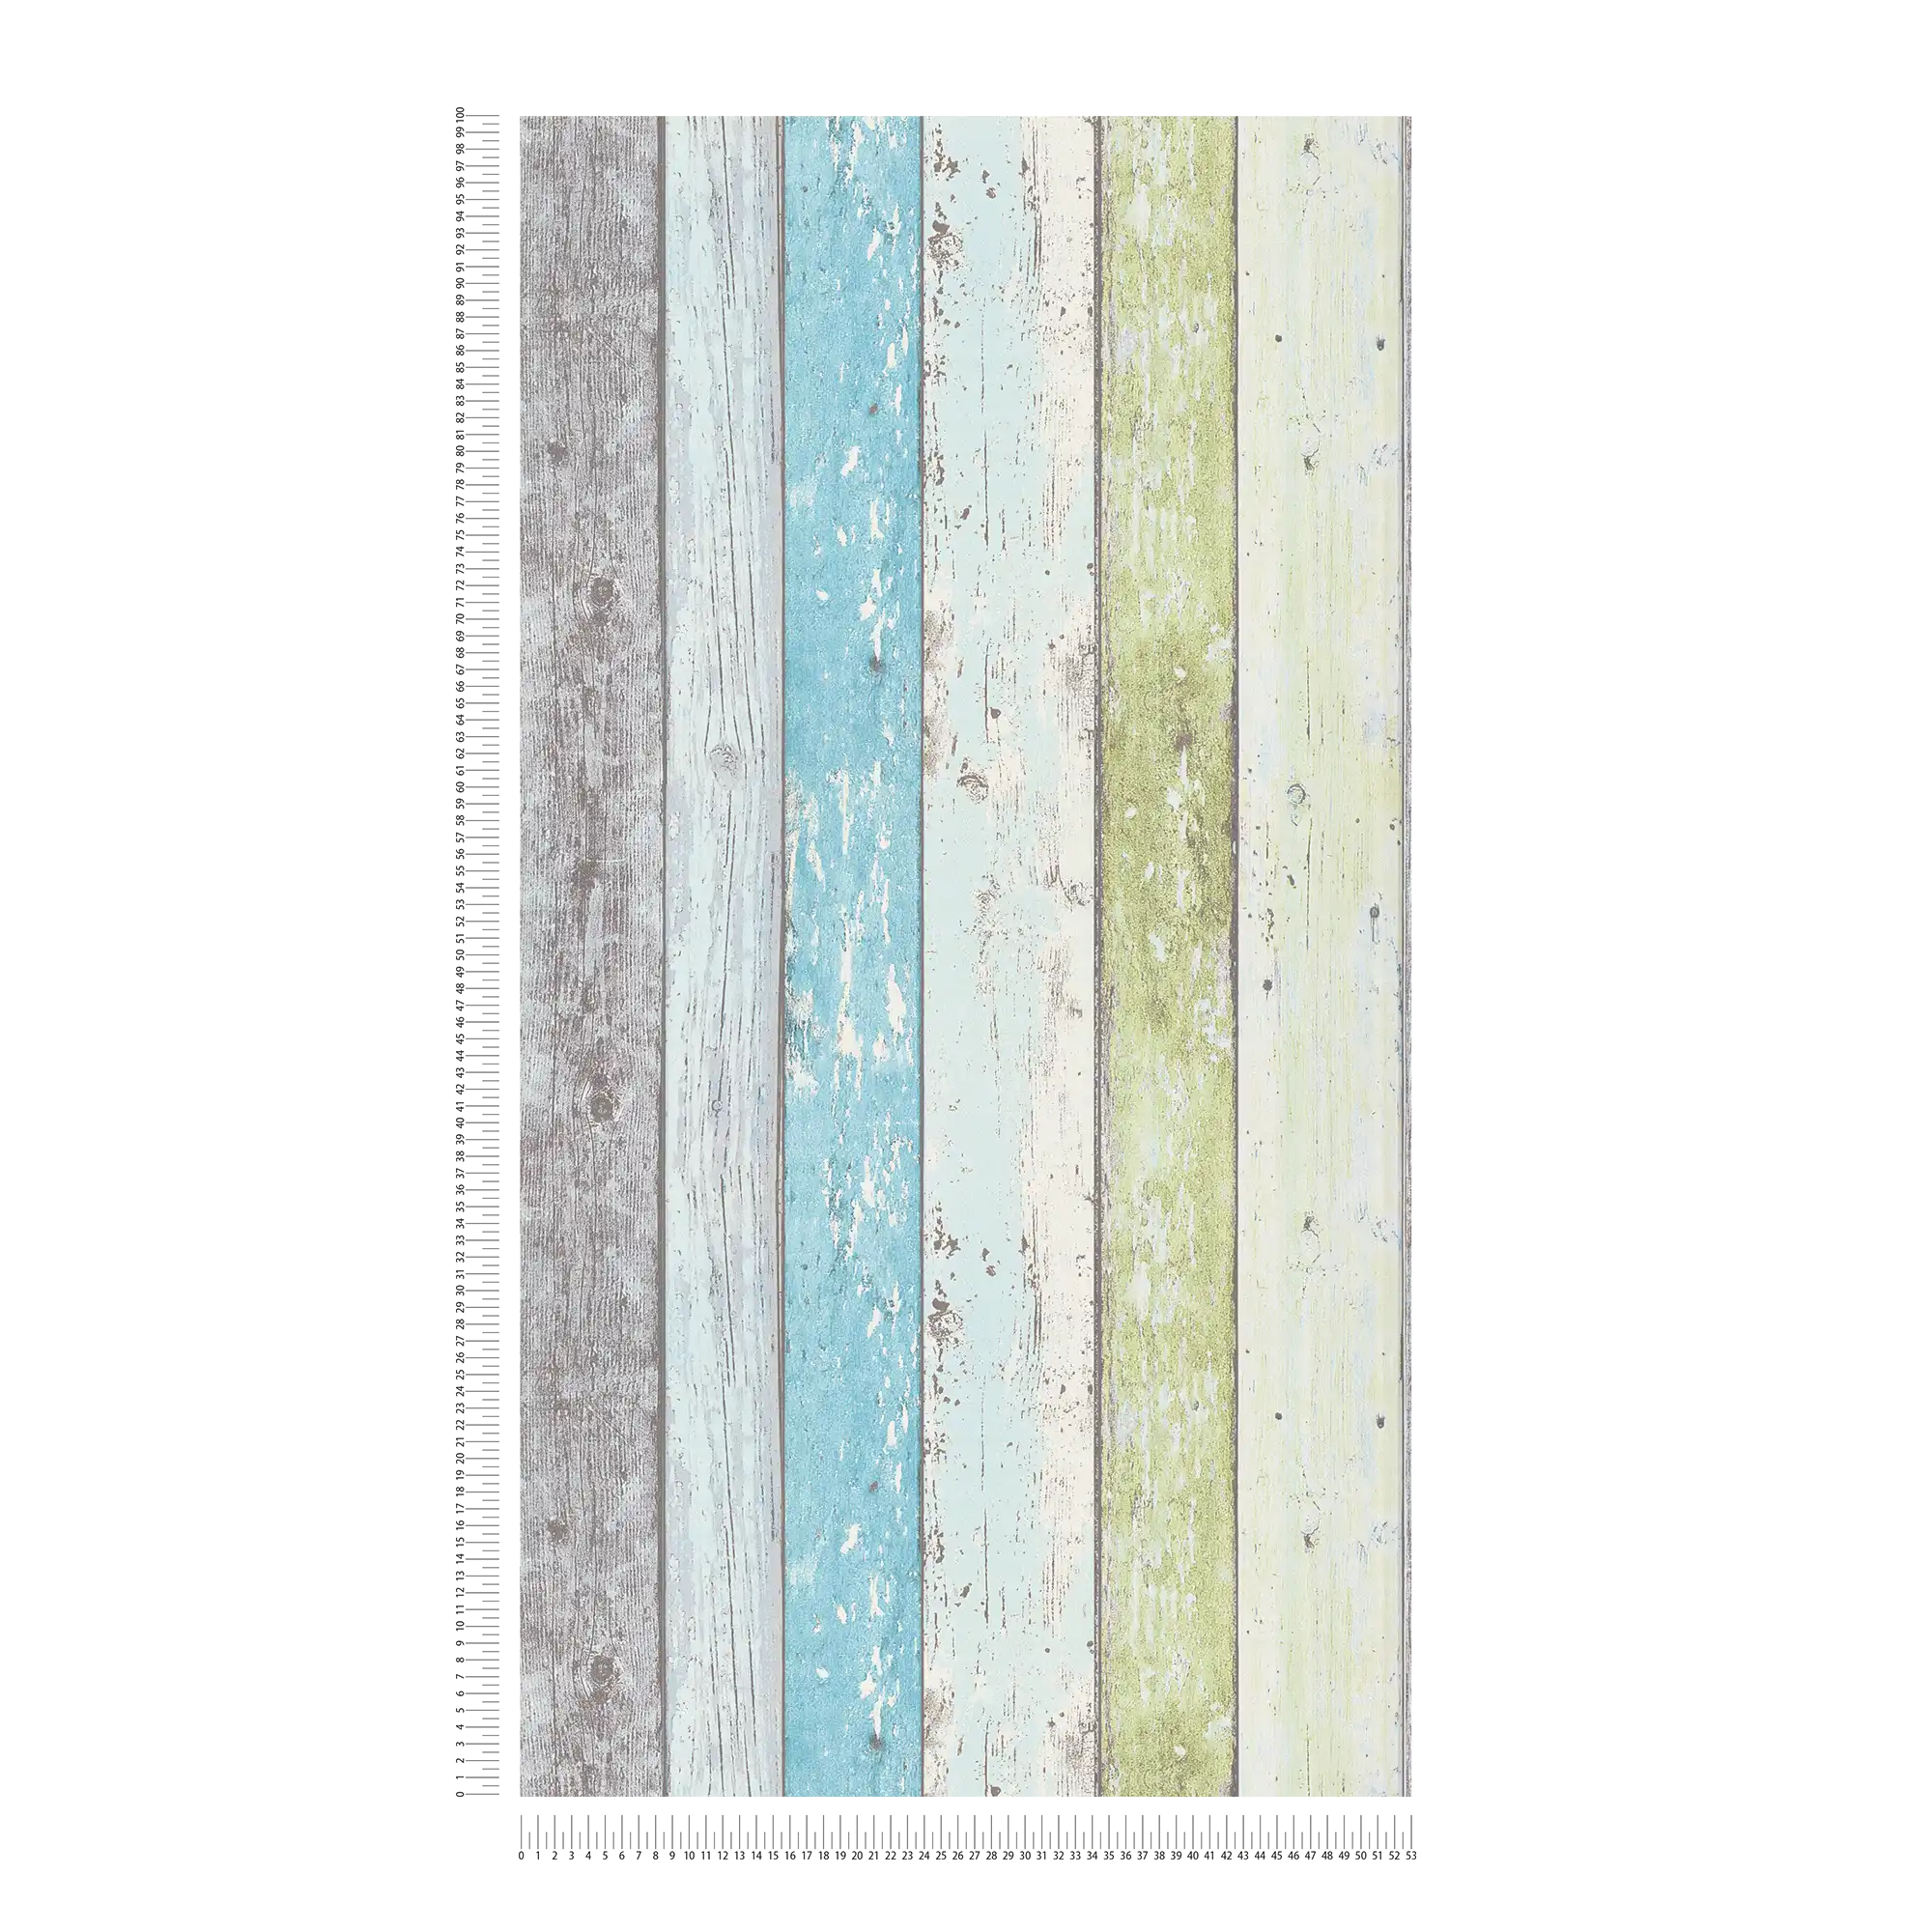             Carta da parati in legno con aspetto usato per lo stile vintage e country - blu, verde, bianco
        